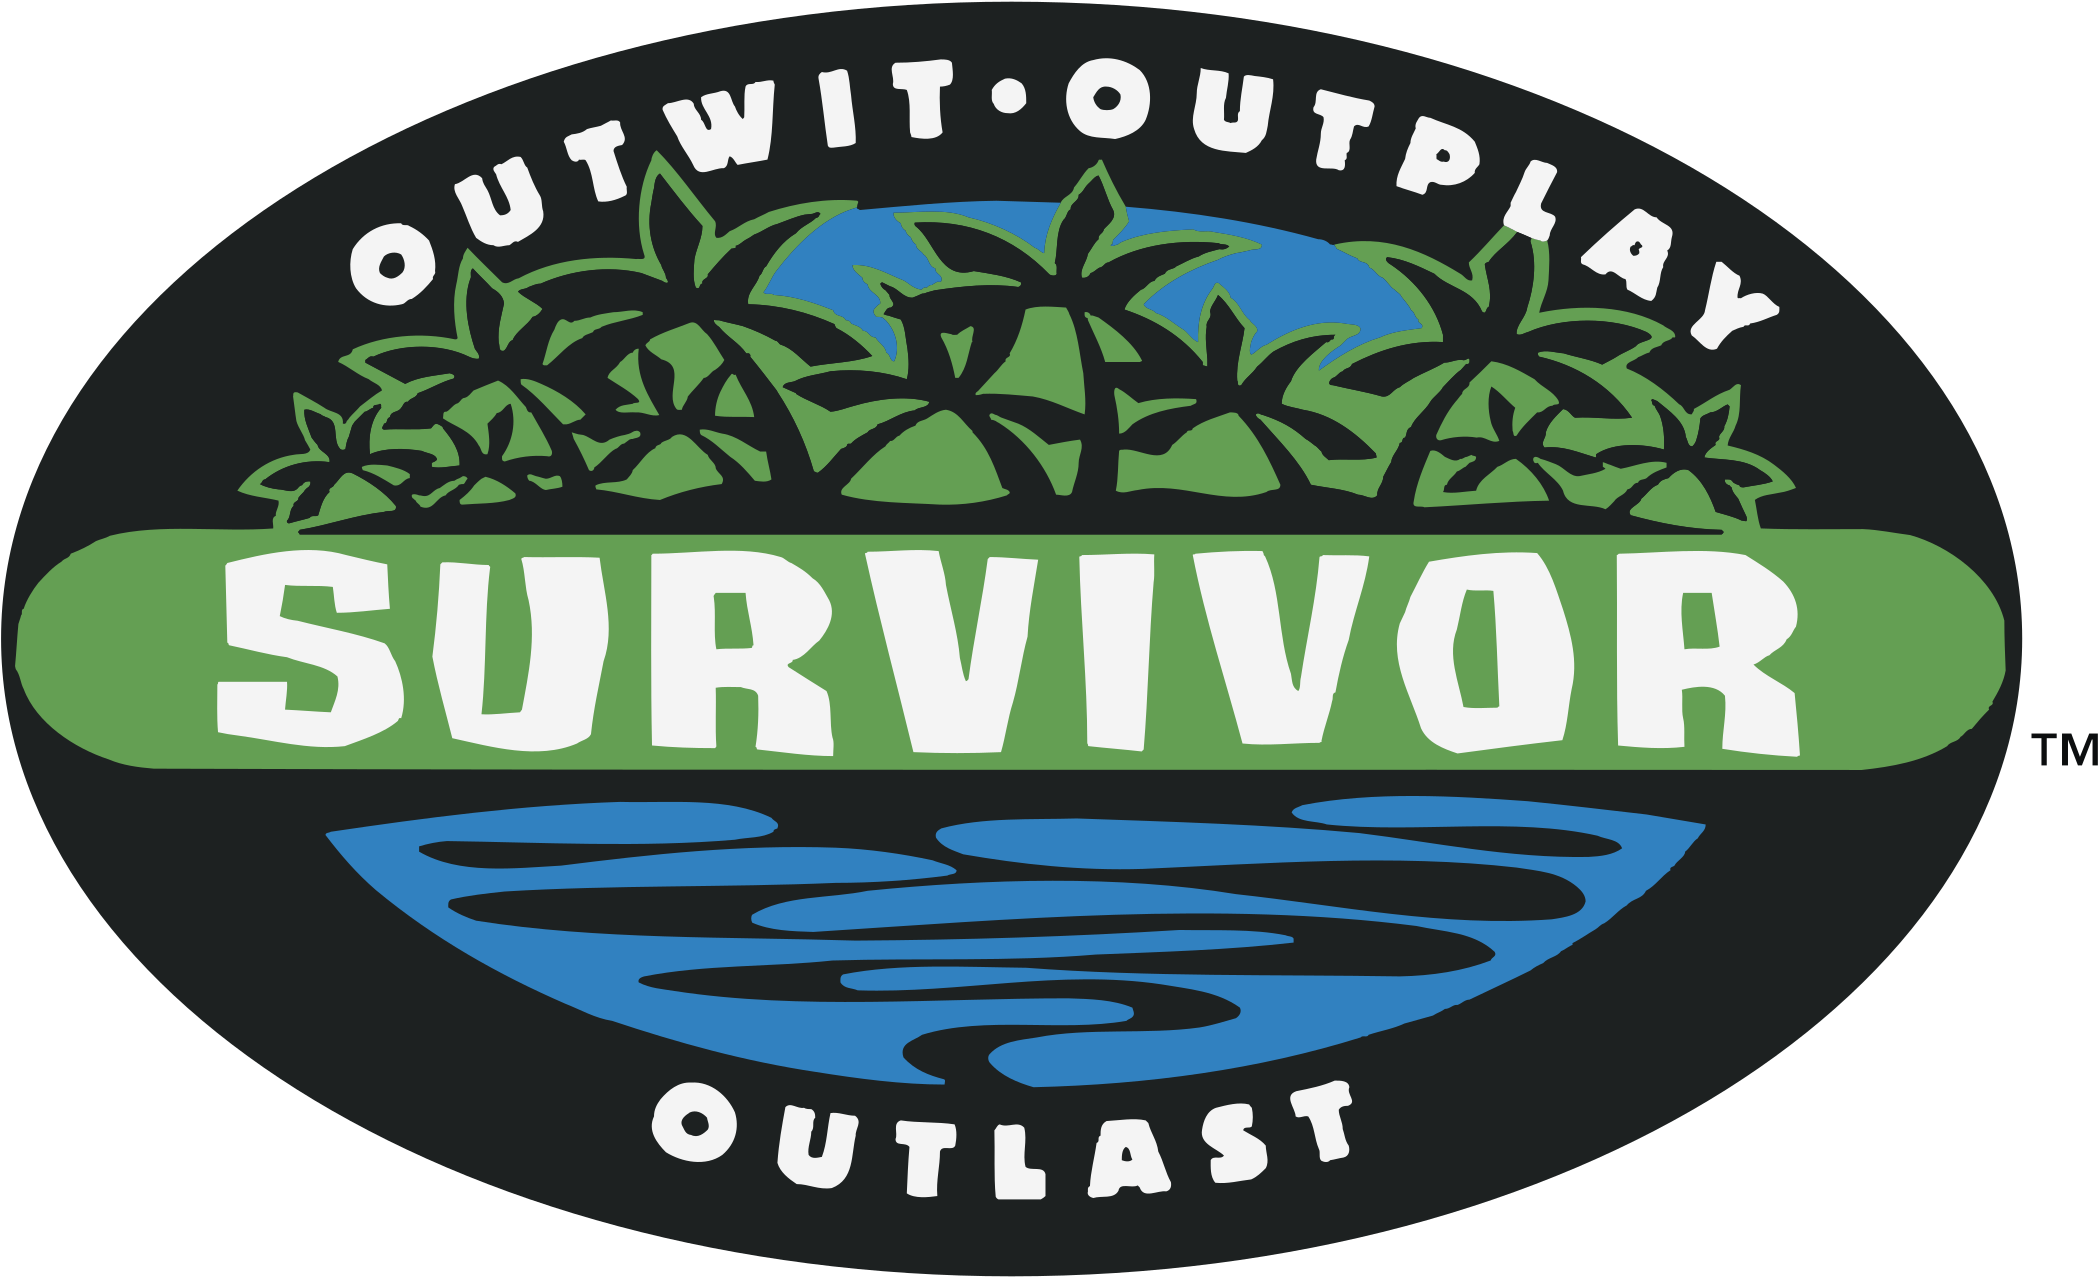 survival, logo, background png images background